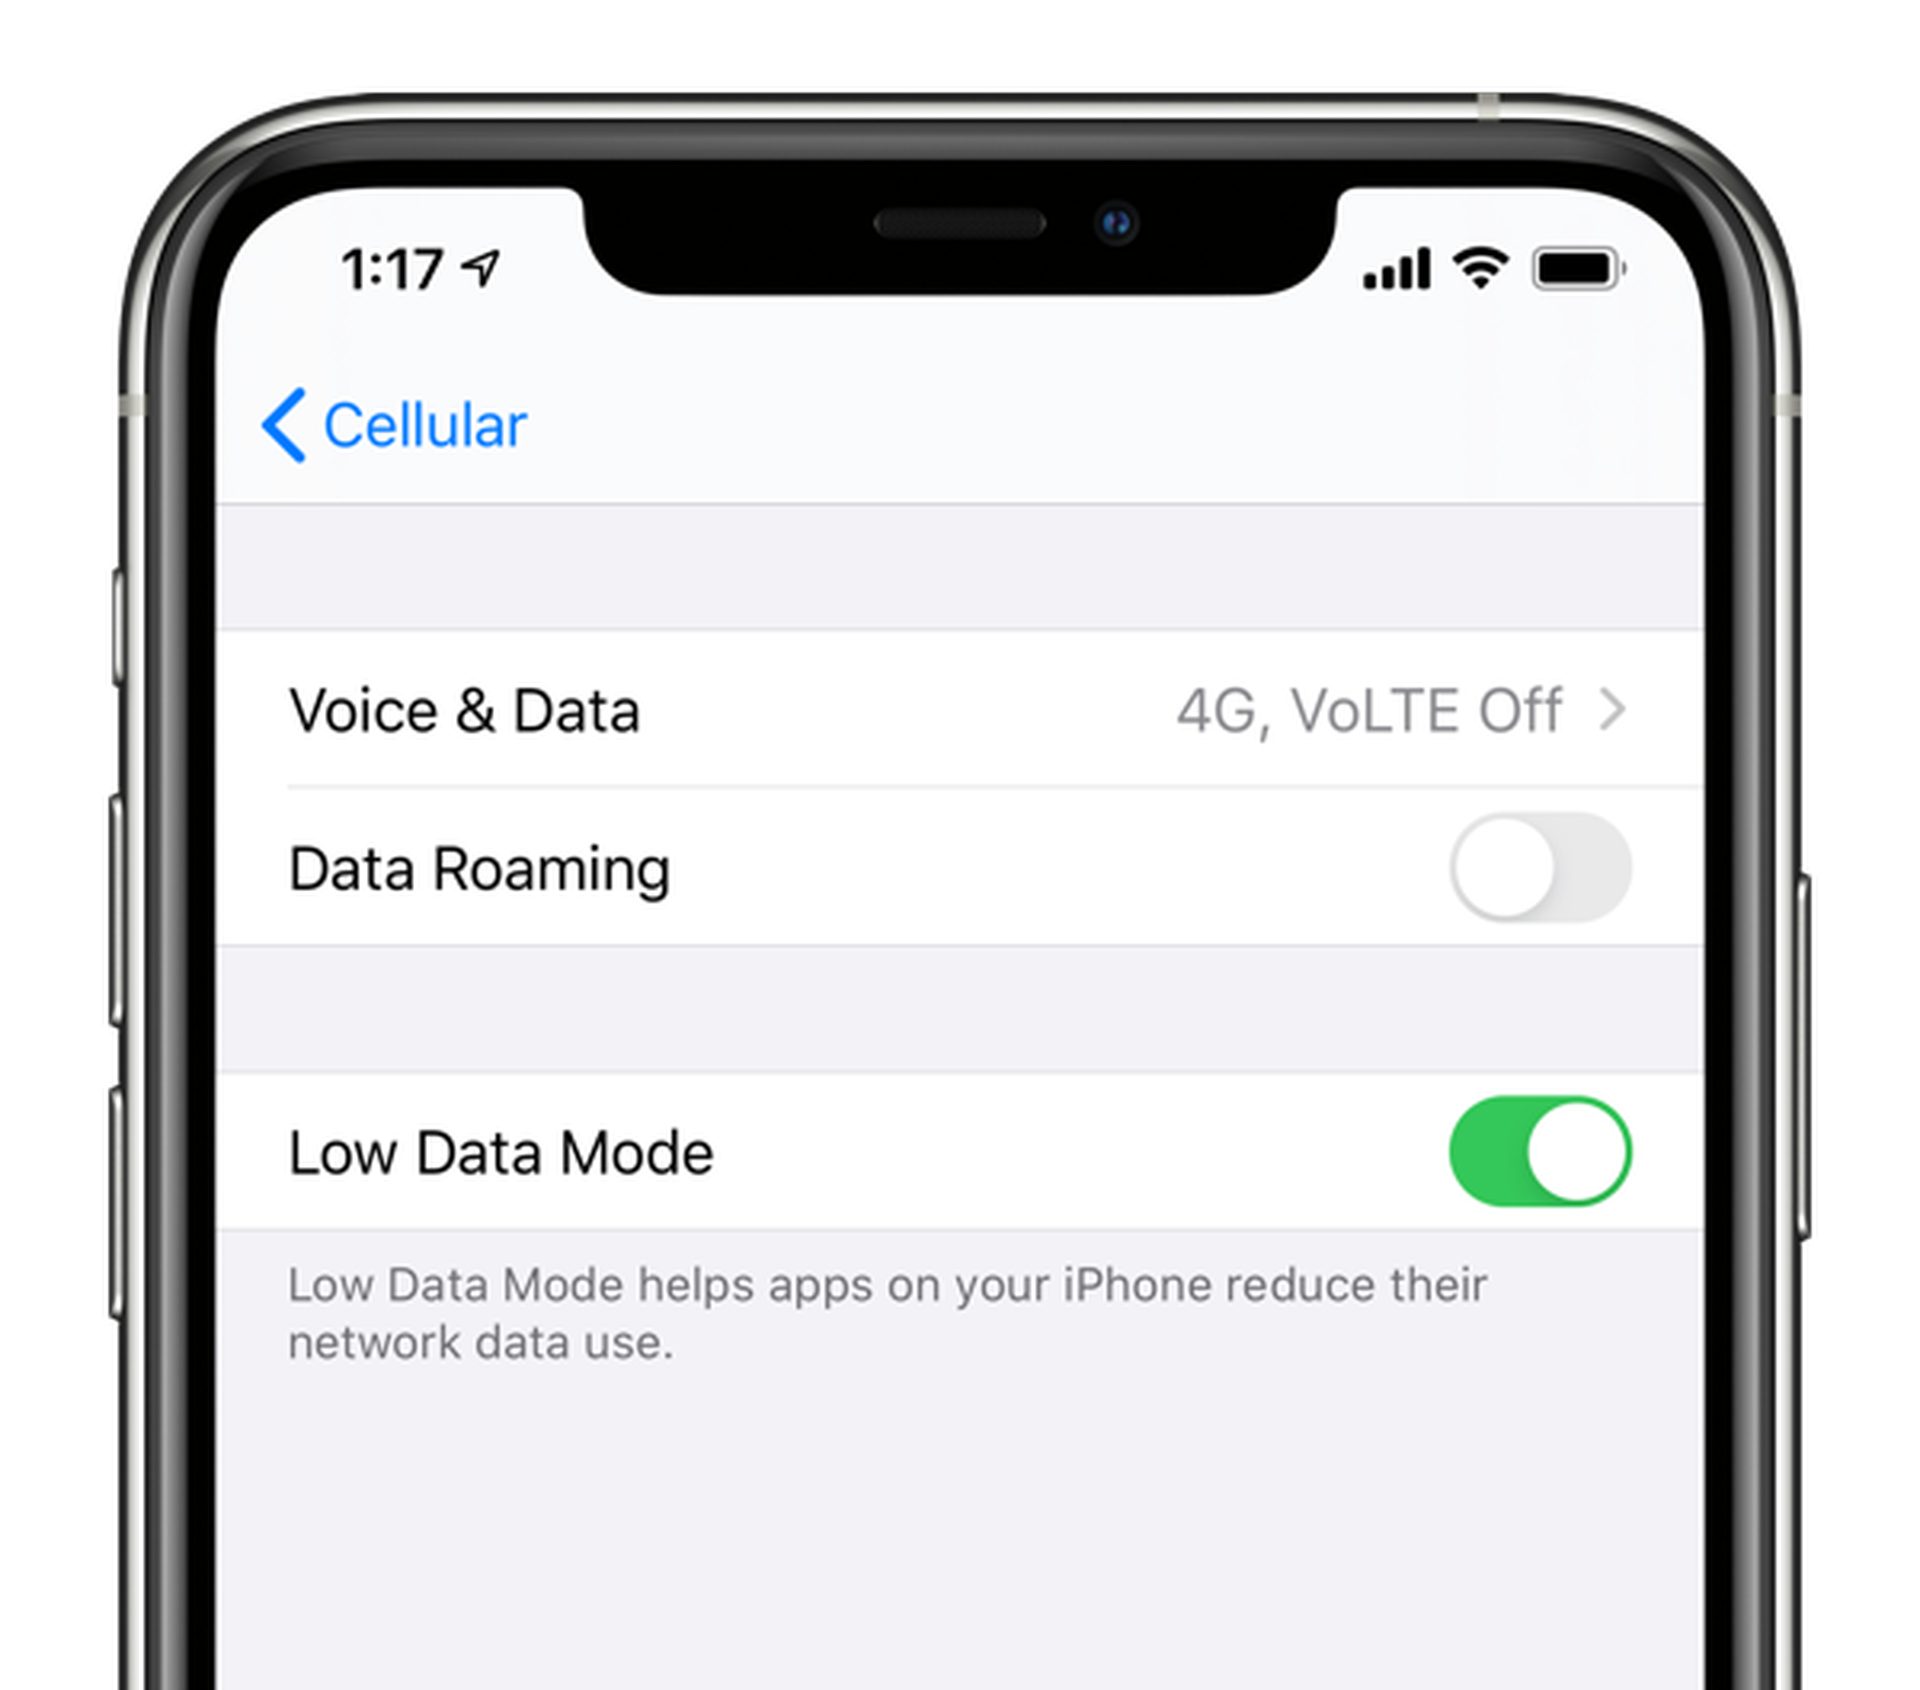 Como desligar/ligar o iPhone no modo de dados baixos?